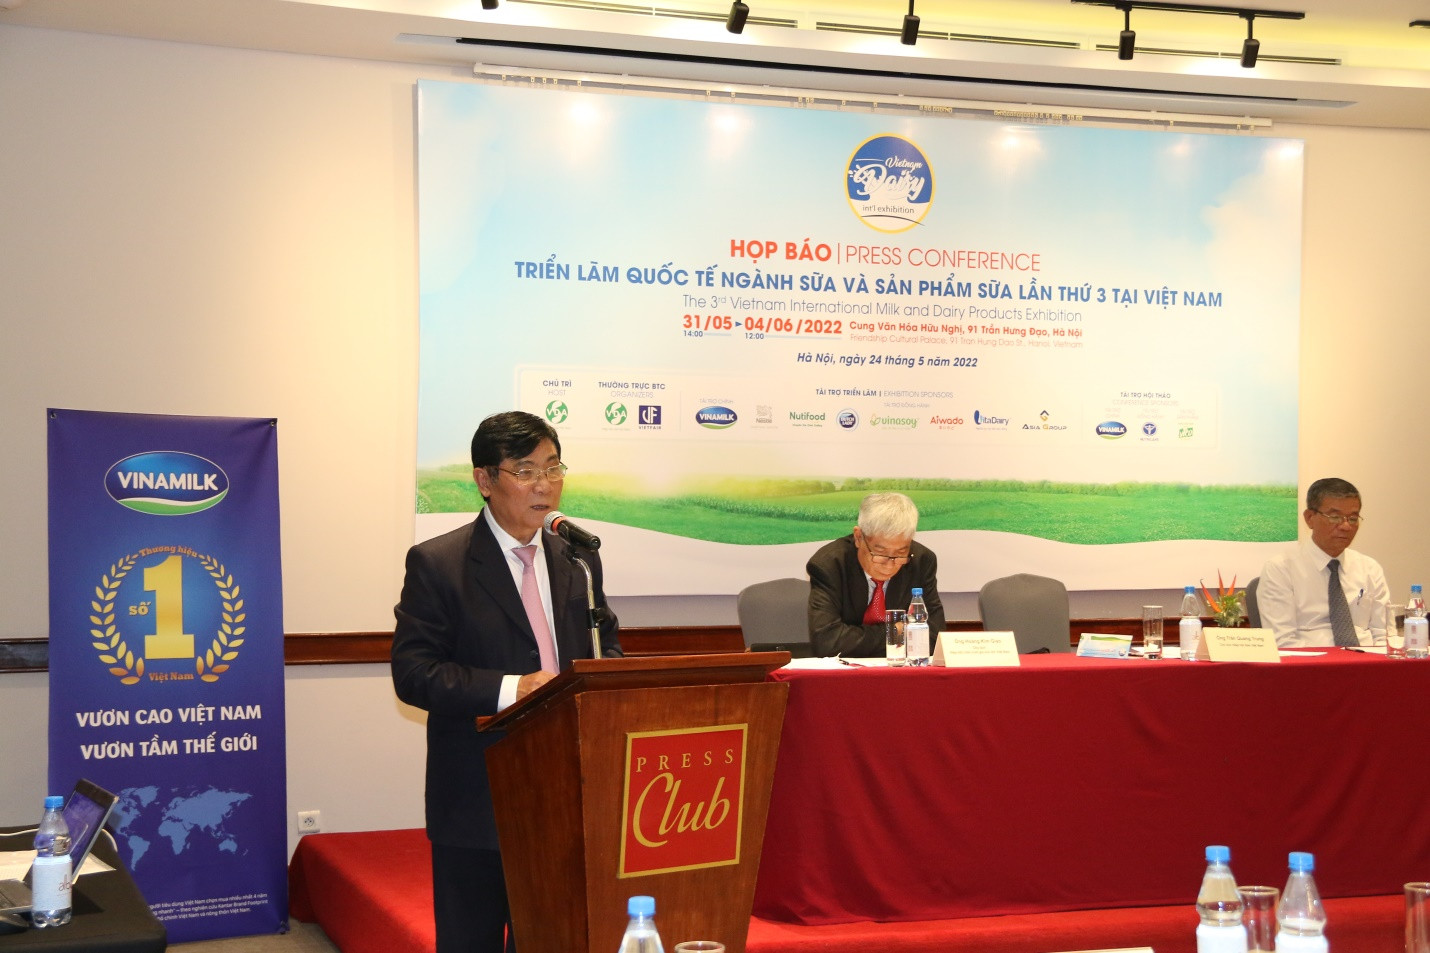 Sắp diễn ra Triển lãm Quốc tế ngành Sữa và sản phẩm từ sữa lần thứ 3 tại Việt Nam - Ảnh 1.